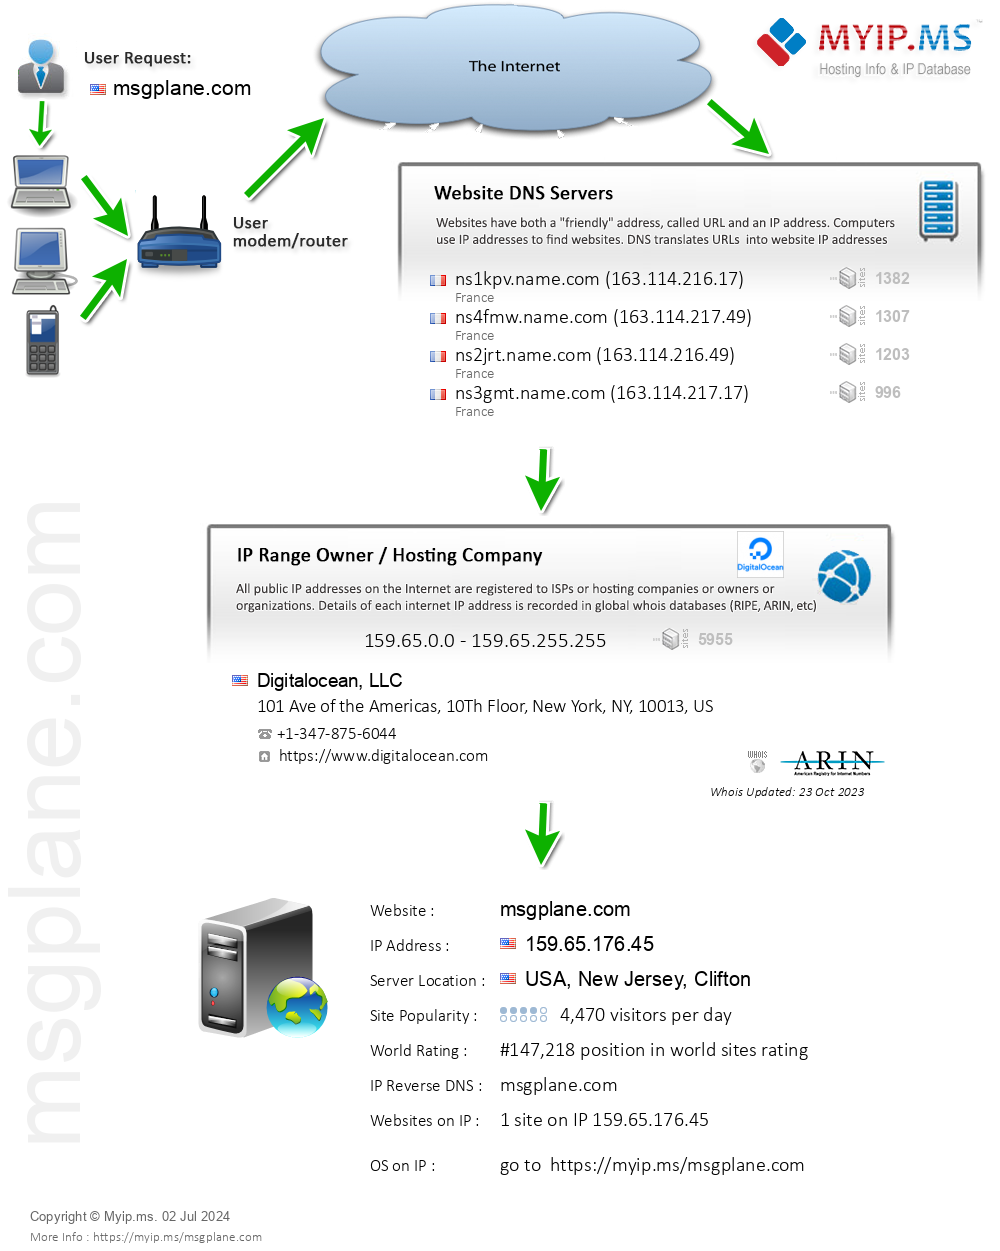 Msgplane.com - Website Hosting Visual IP Diagram